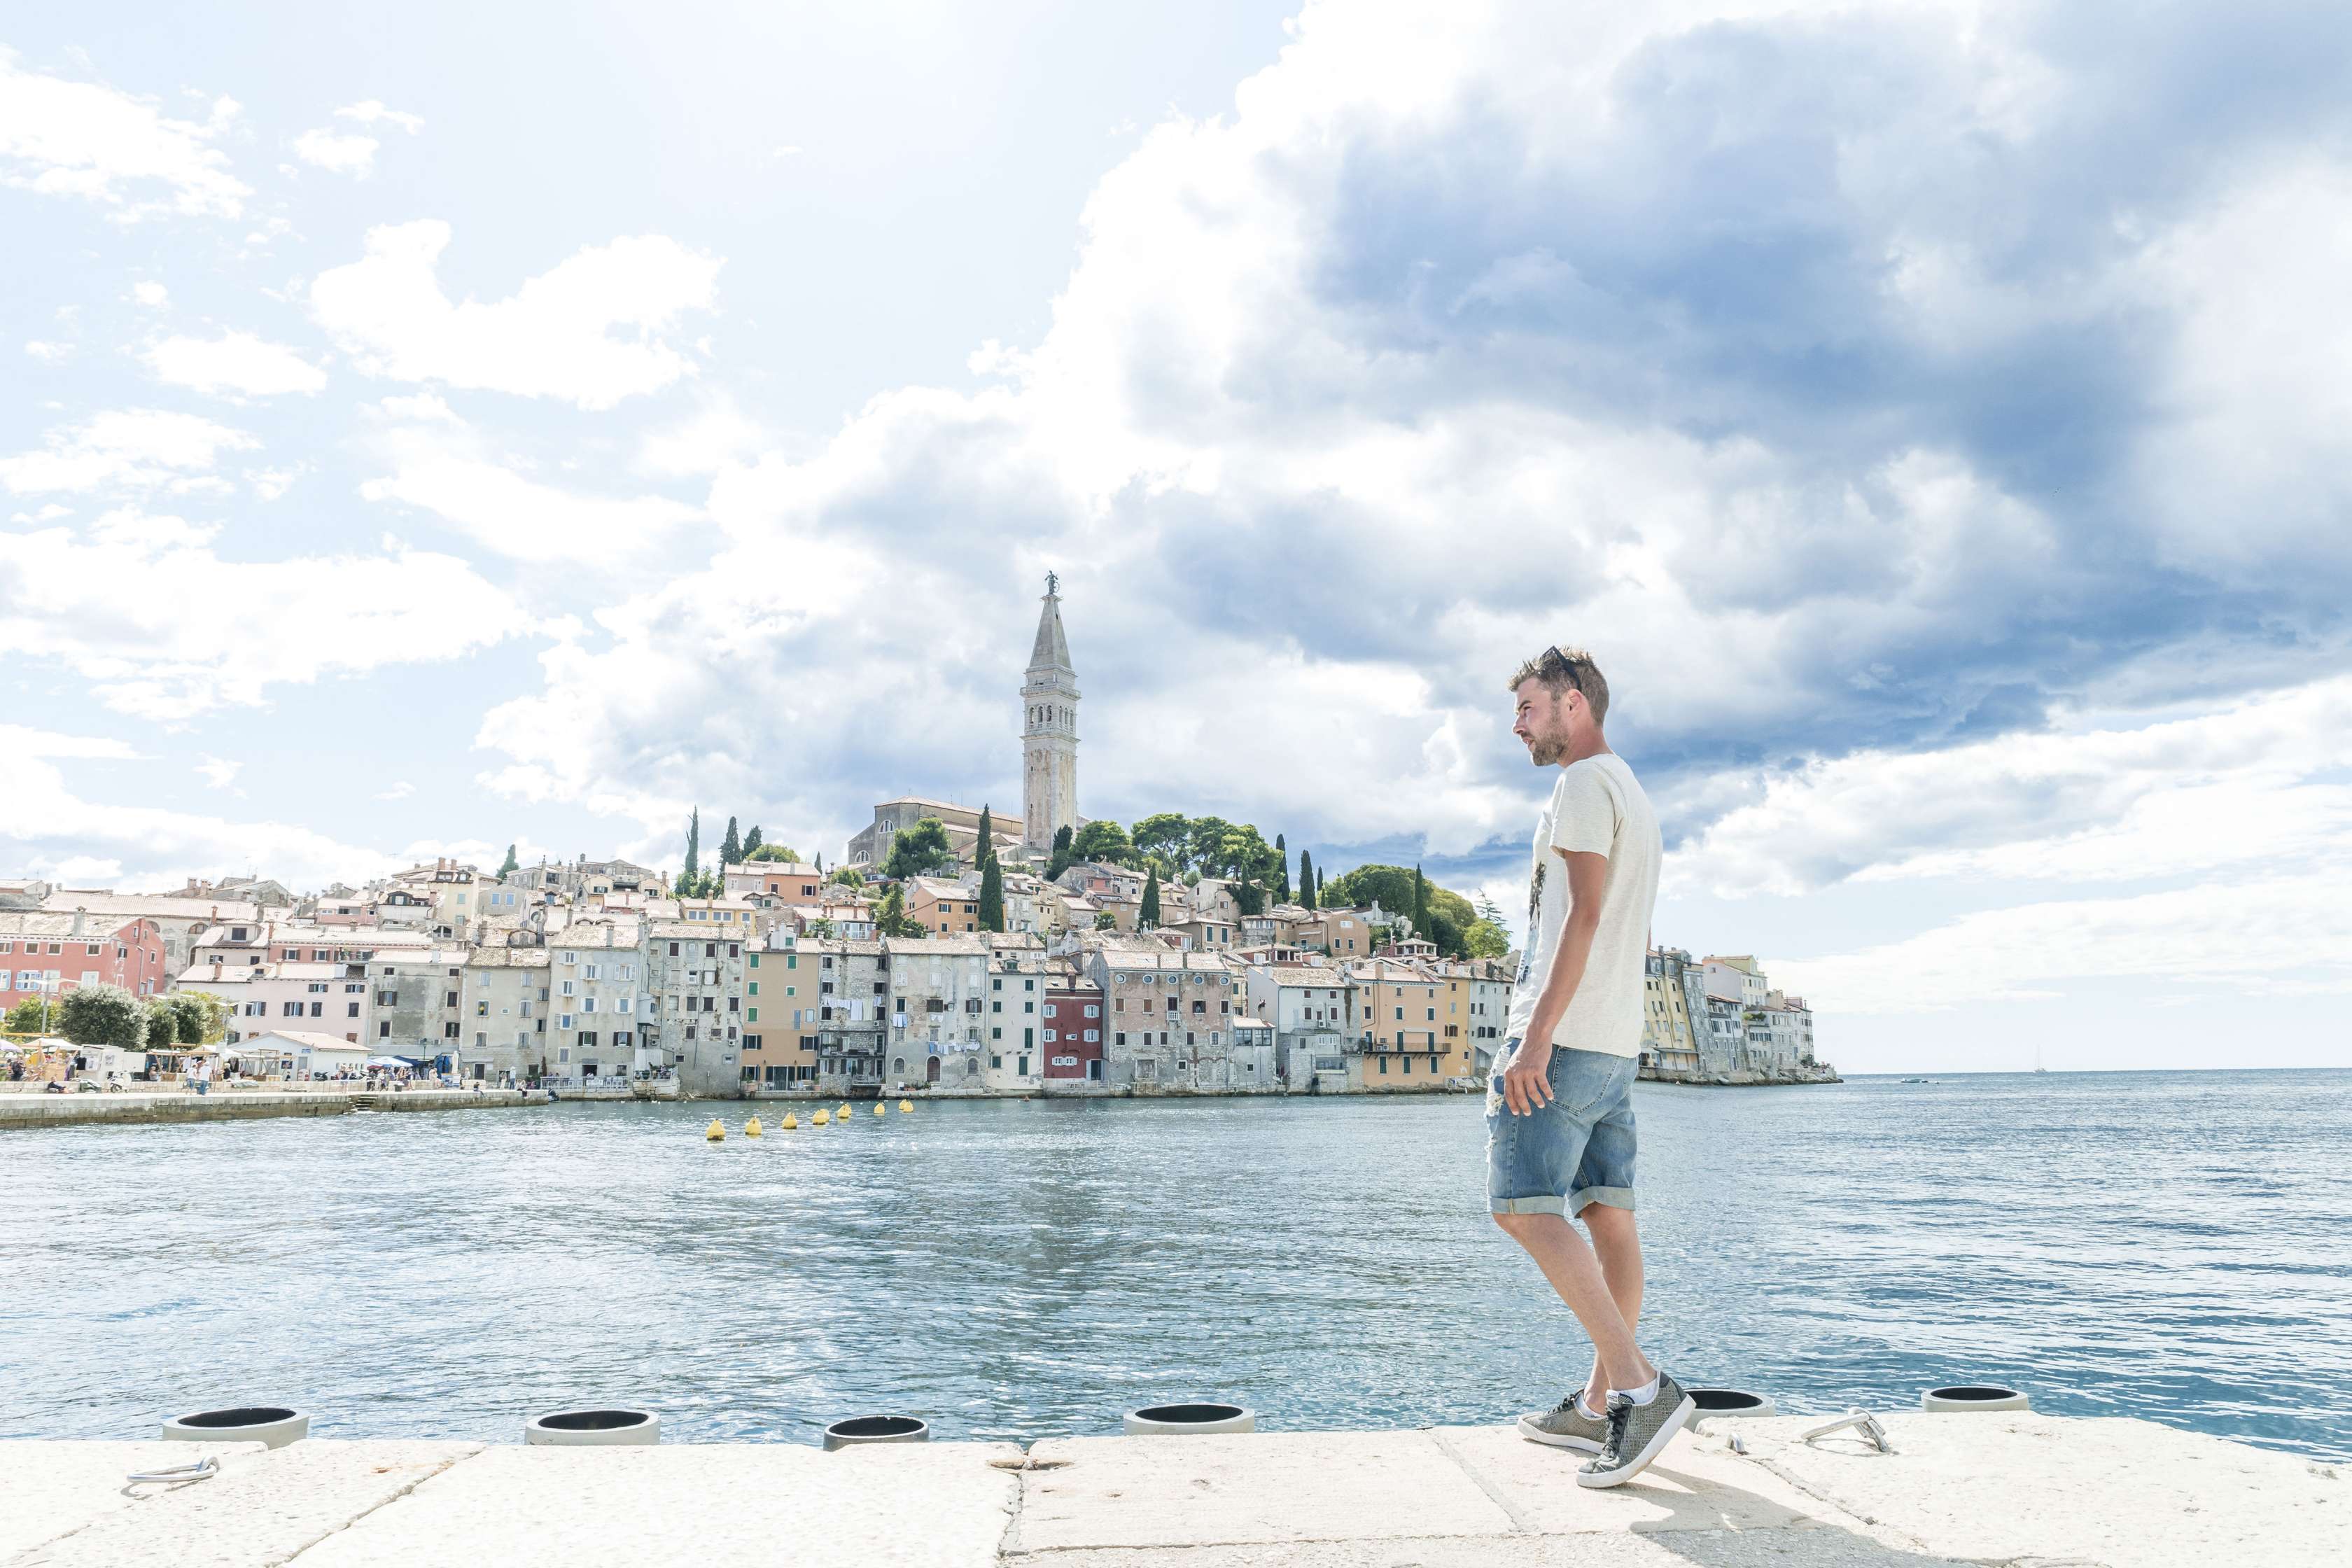 Mann steht am Meerufer, im Hintergrund ist eine Hafenstadt zu sehen